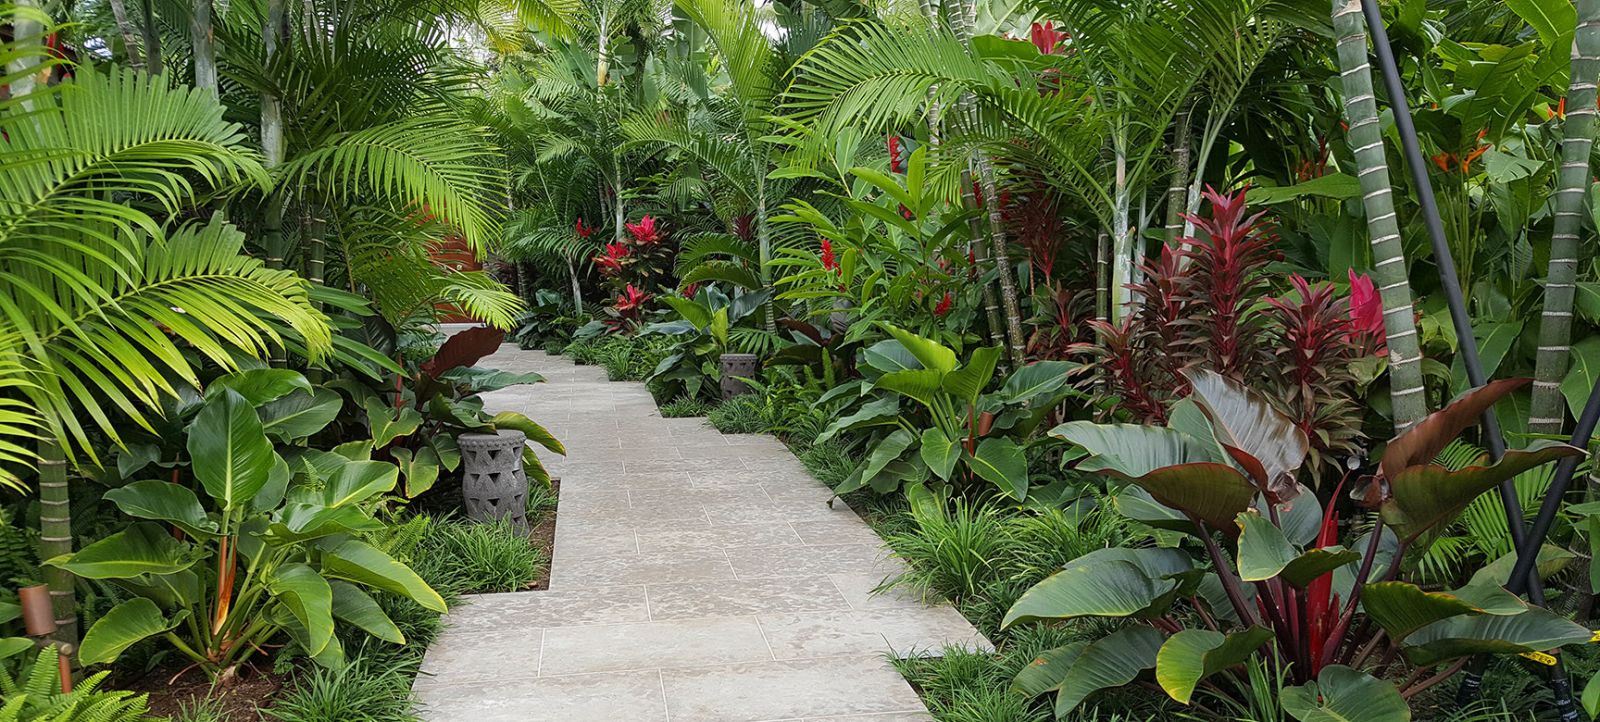 Thiết kế sân vườn nhiệt đới